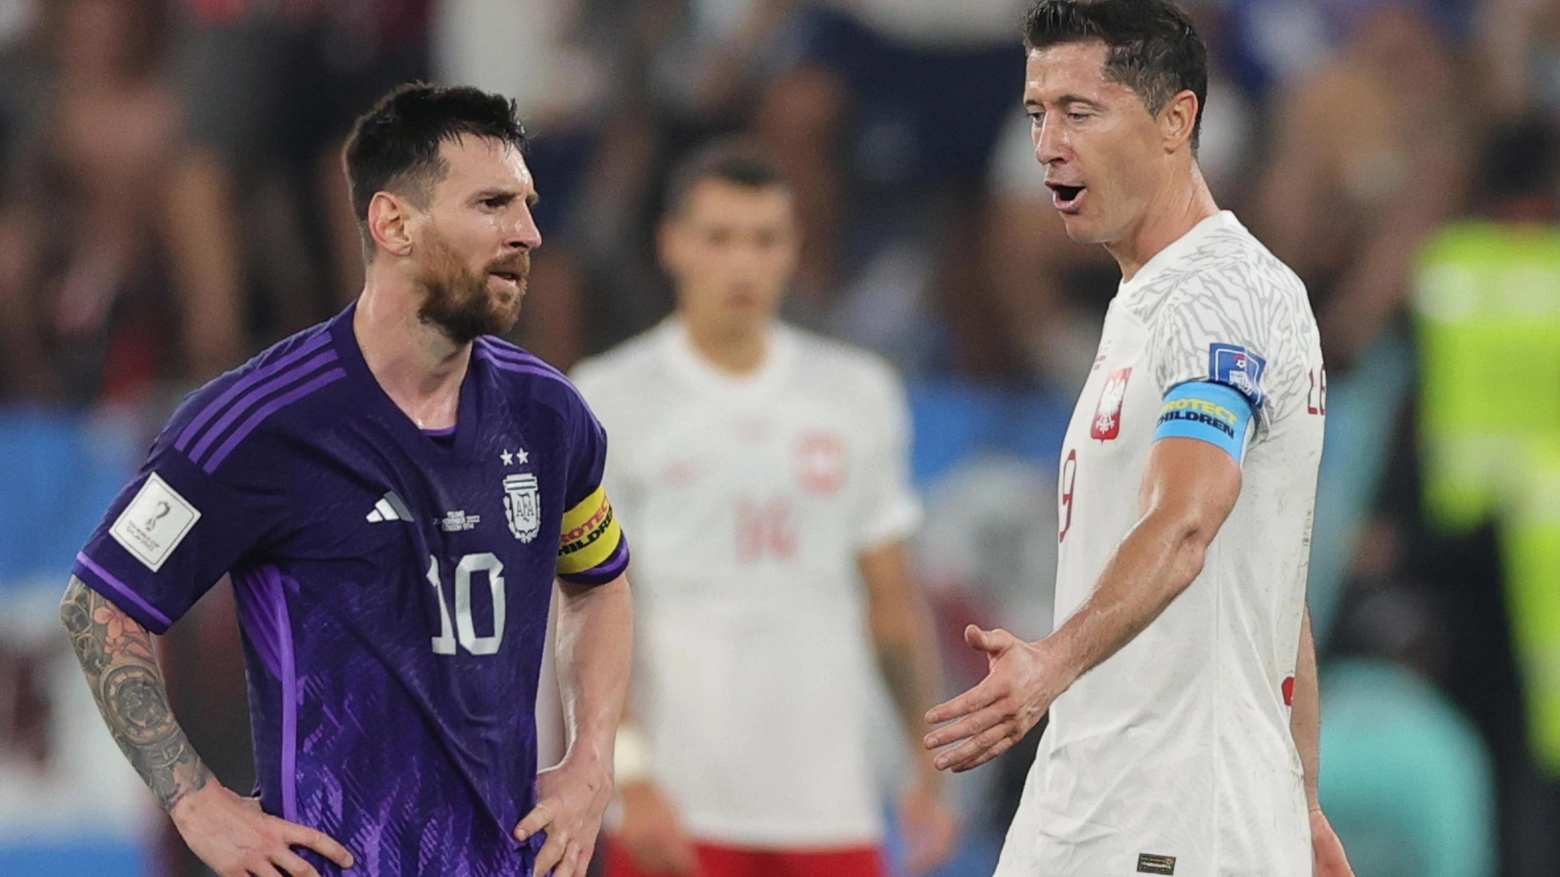 La Polonia di Lewandoski contro la Francia, l'Argentina di Messi contro l'Australia